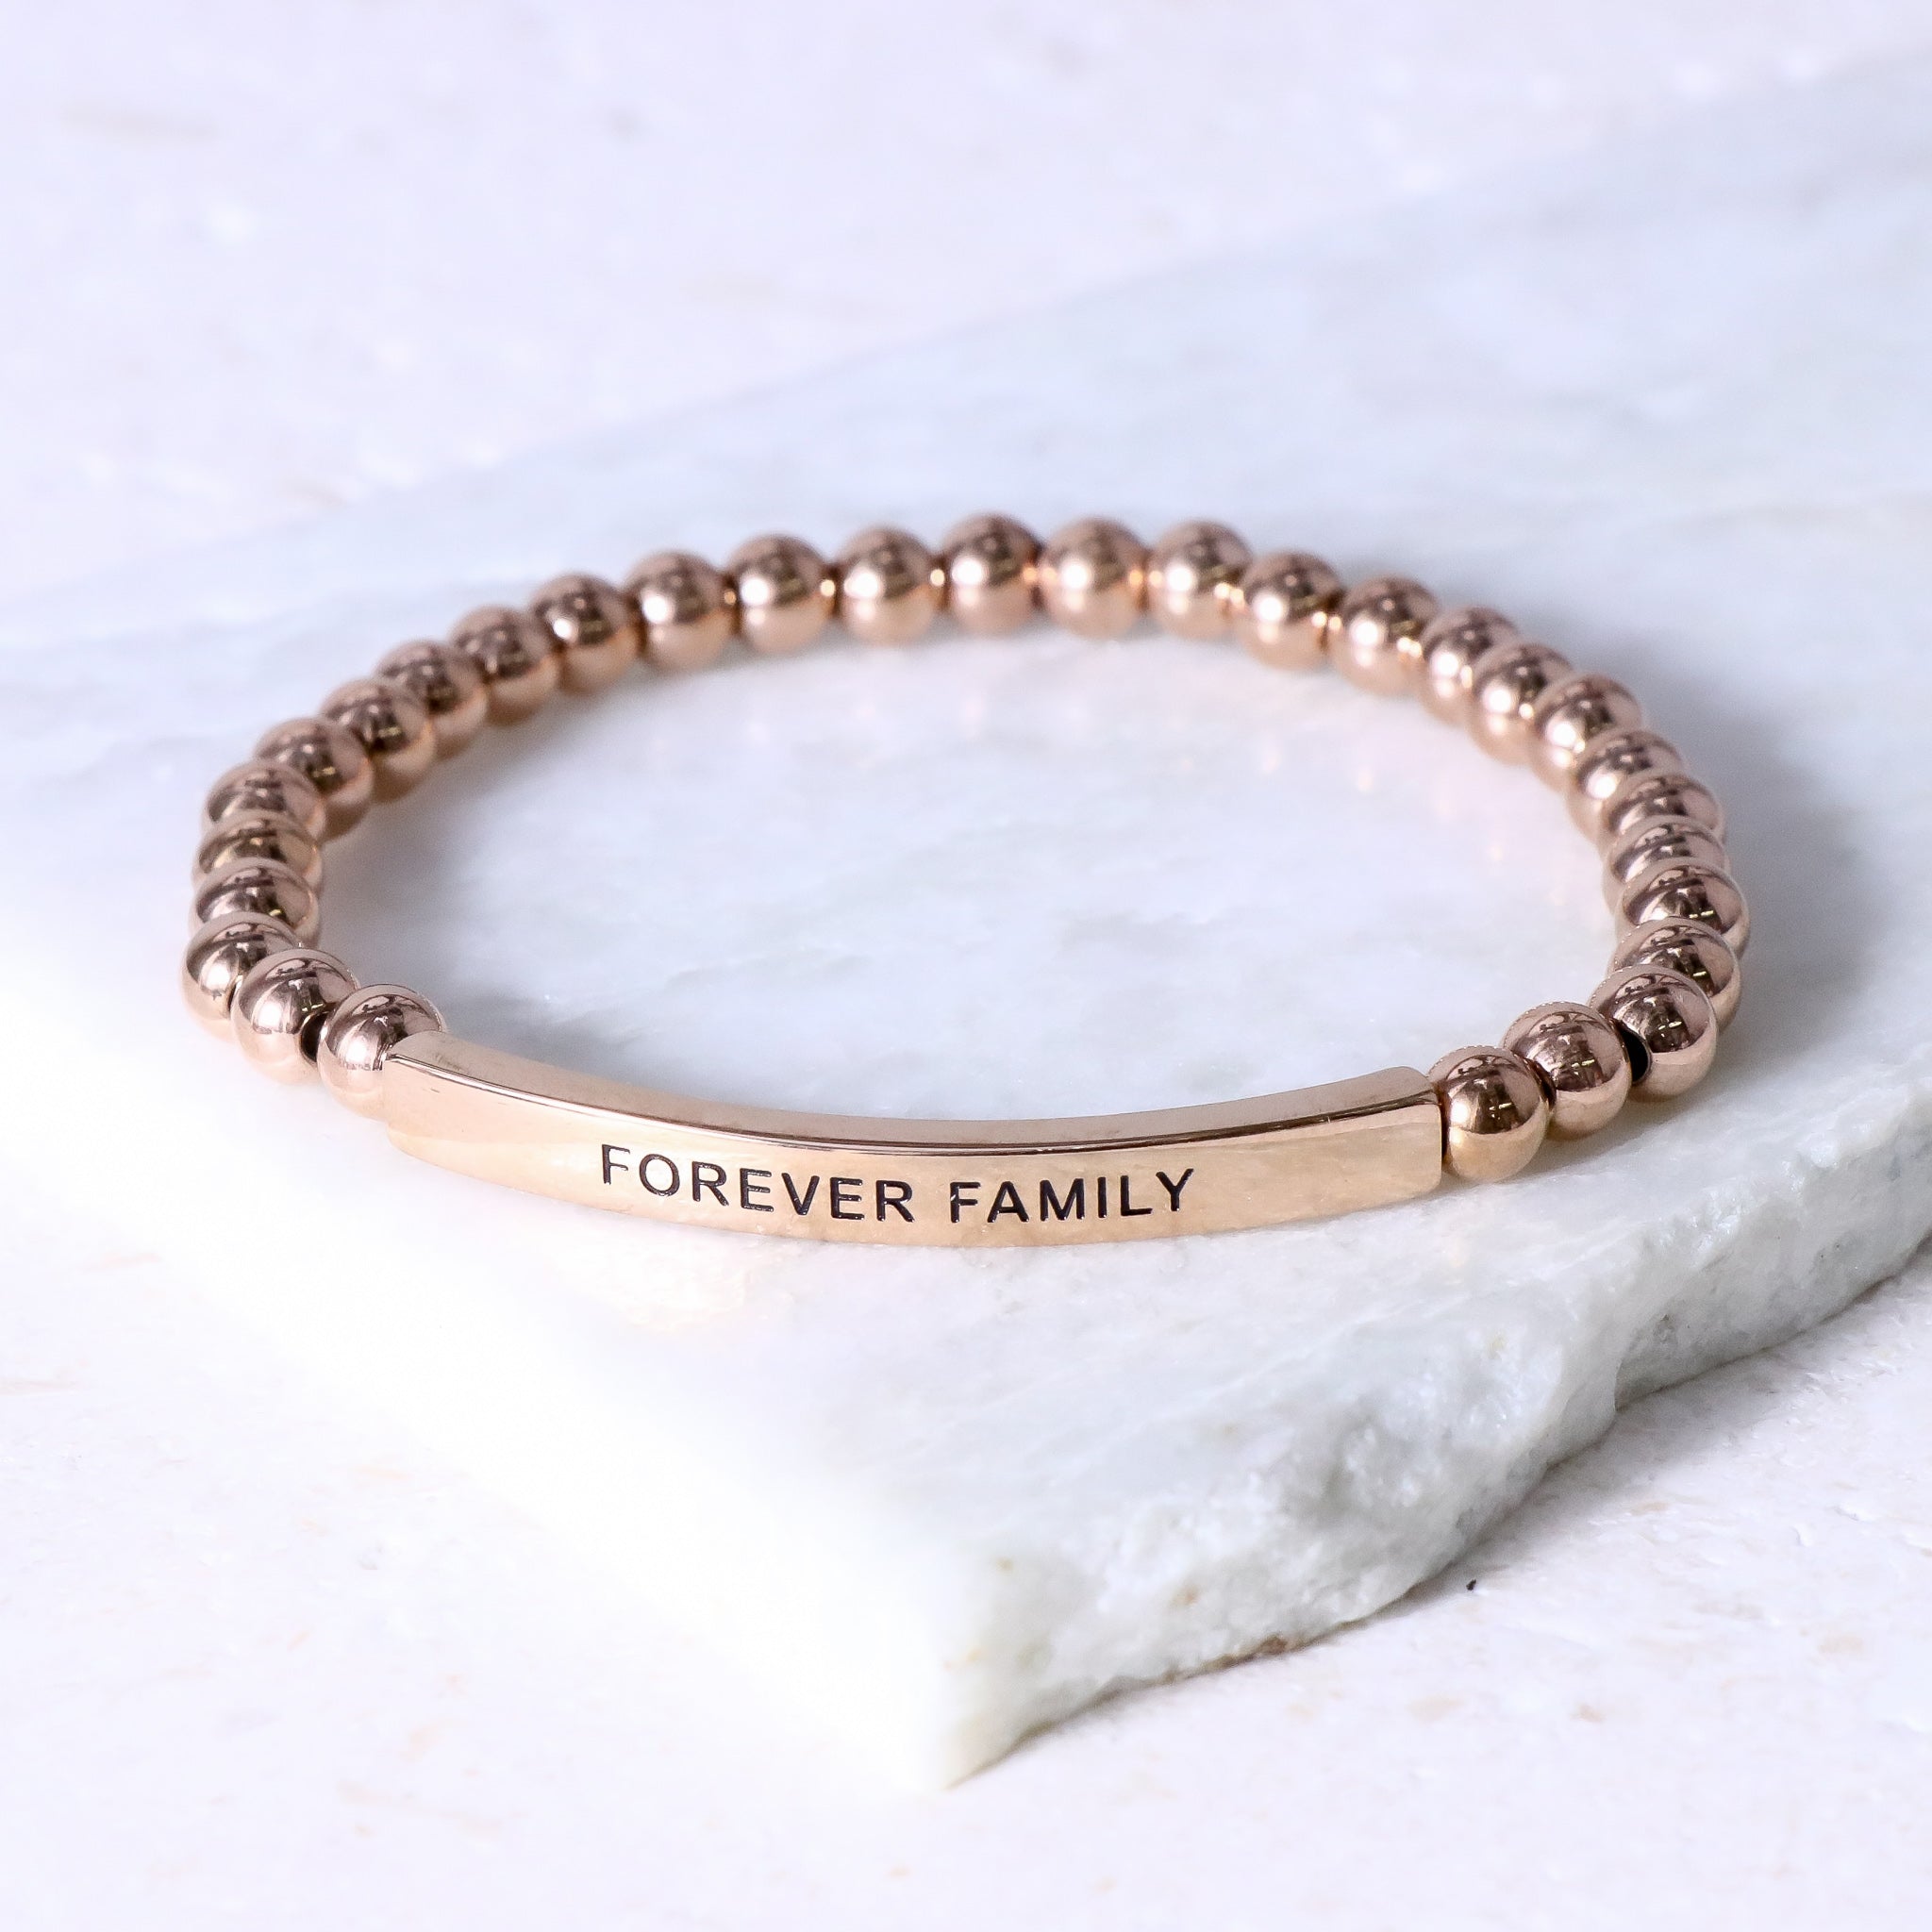 Forever bracelet